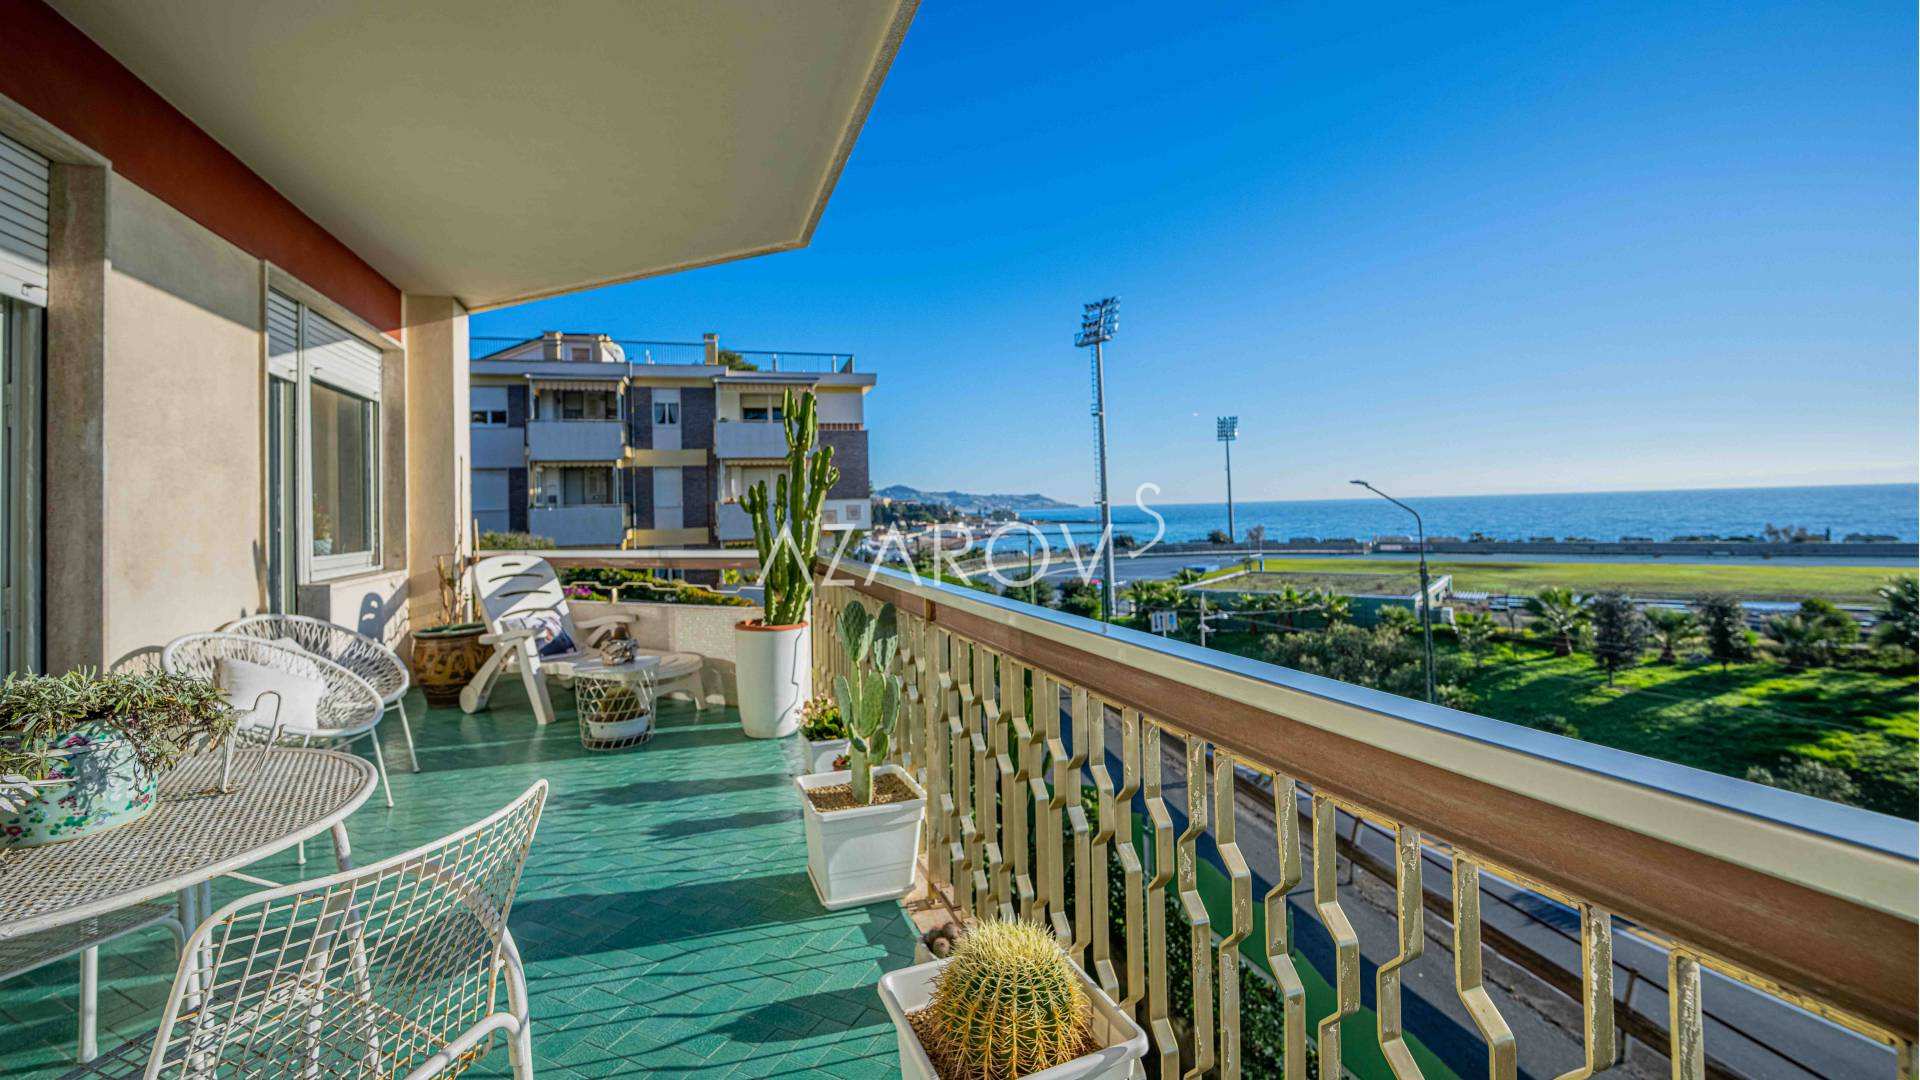 Wohnung zum Verkauf am Meer in Sanremo